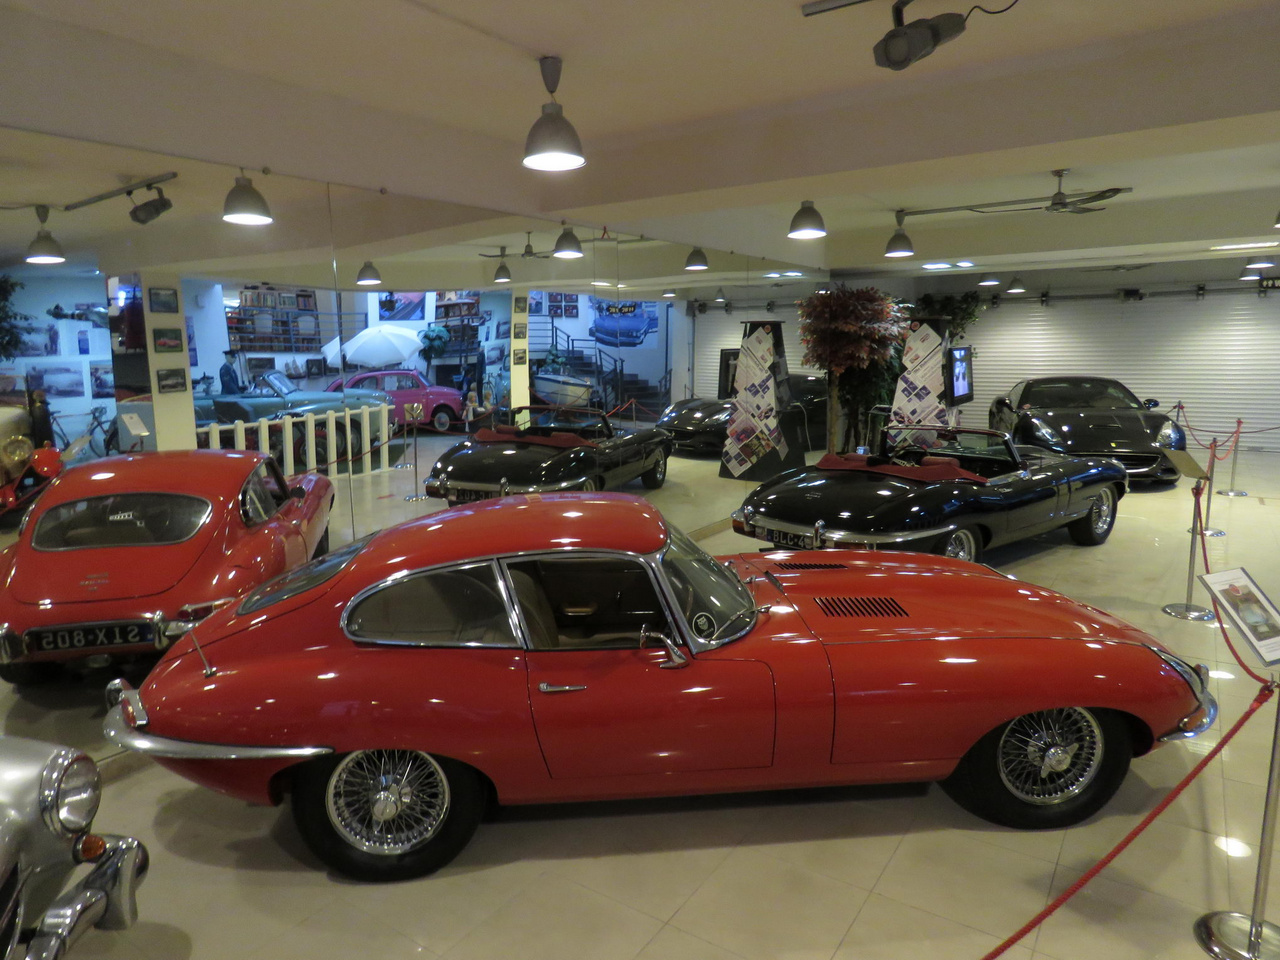 Két Jaguar E-Type egy ilyen kis múzeumban (ráadásként a háttérben egy Ferrari, a viszonylag ritka fekete színben) – mindenképpen szép gyűjtői teljesítmény. Az E-Type-okat tartják sokan a legszebb klasszikus angol sportkocsiknak, és vannak olyan elvetemültek is, akik szerint ezek a valaha épített leggyönyörűbb autók, minden toplista tetején. Mostanság a nevükben szereplő E új értelmet kap: több műhely is elektromos autóvá alakítja őket, a veteránautózás erősen vitatott, de gyorsan terjedő új irányzatának keretében. 